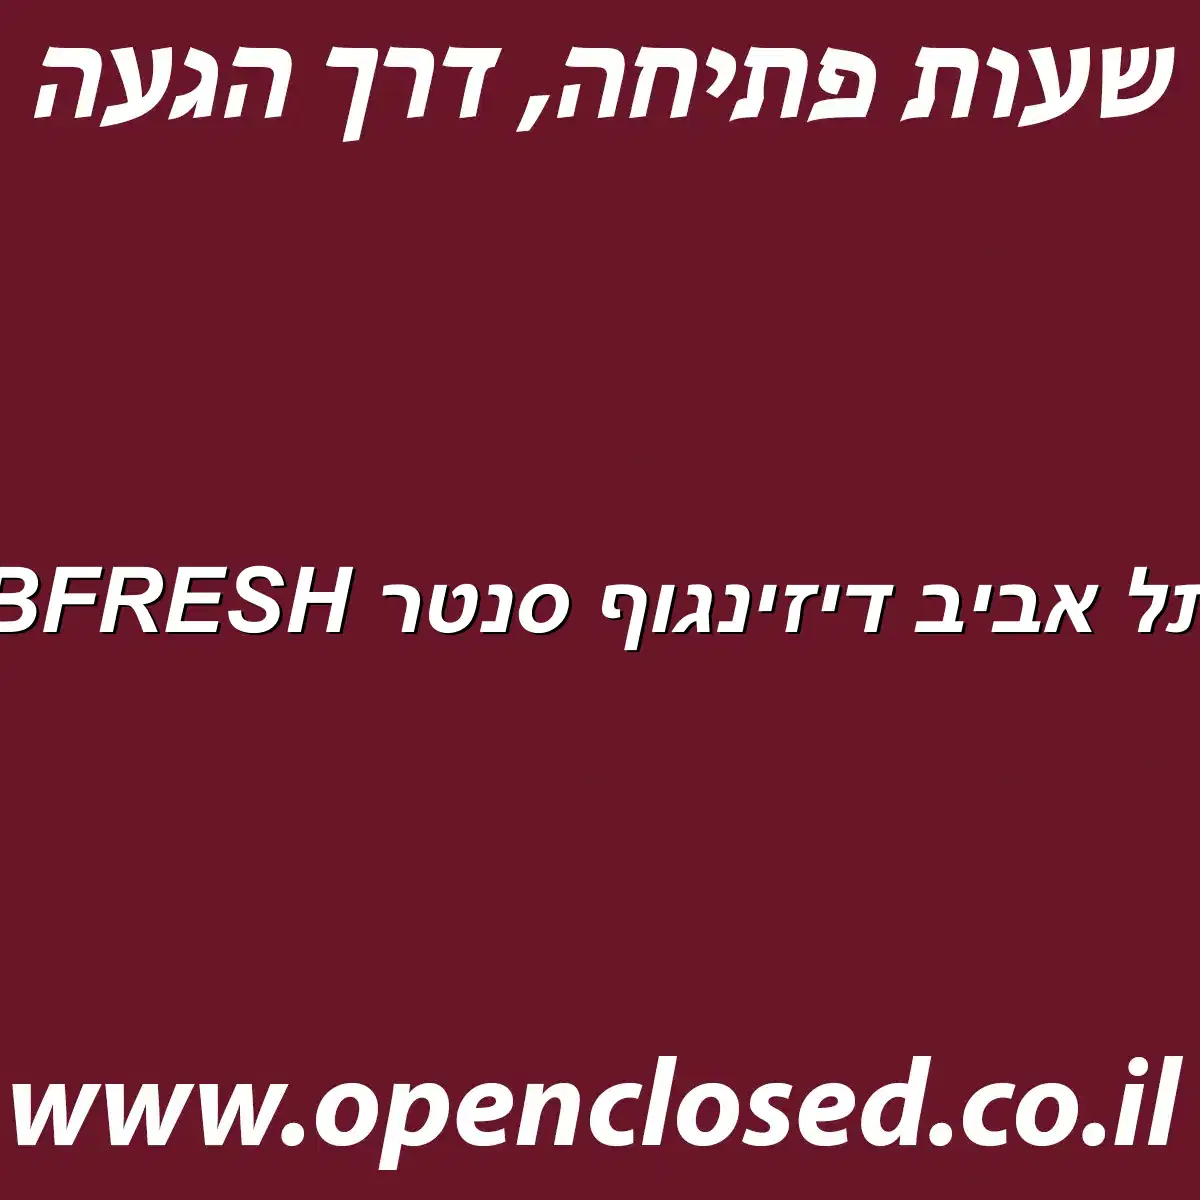 BFRESH תל אביב דיזינגוף סנטר